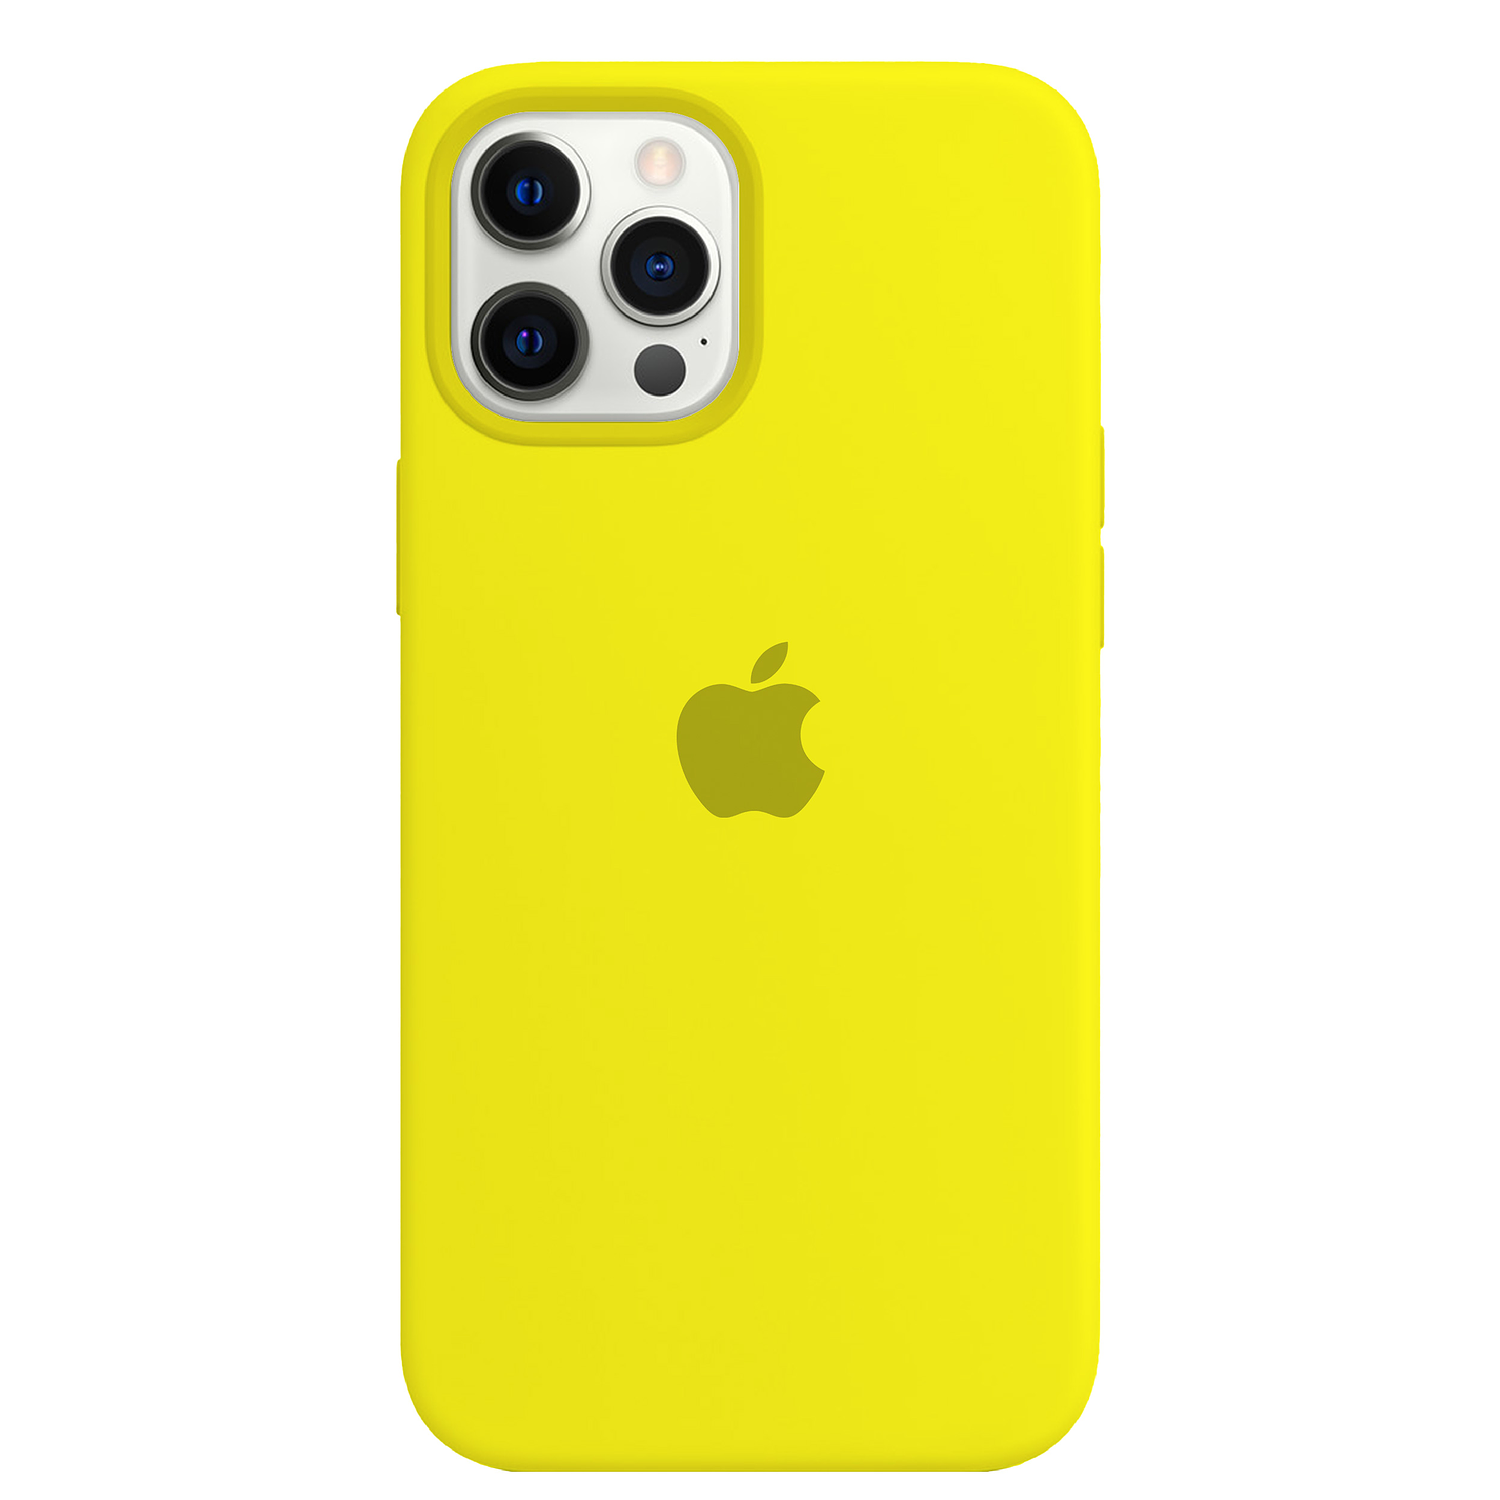 Carcasa de Silicona - iPhone 12 Pro Max 2